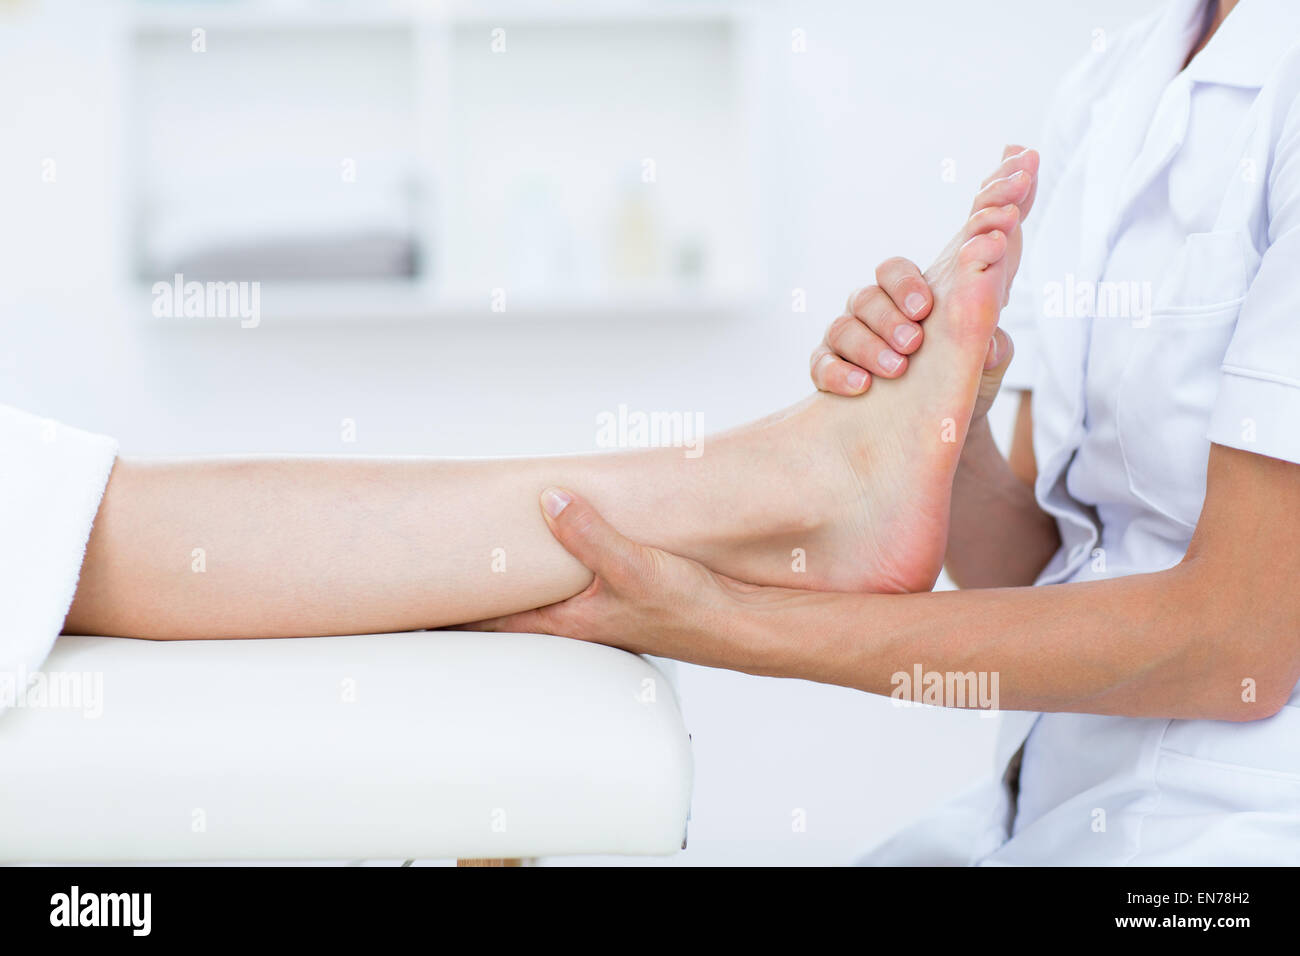 Physiotherapist doing foot massage Stock Photo